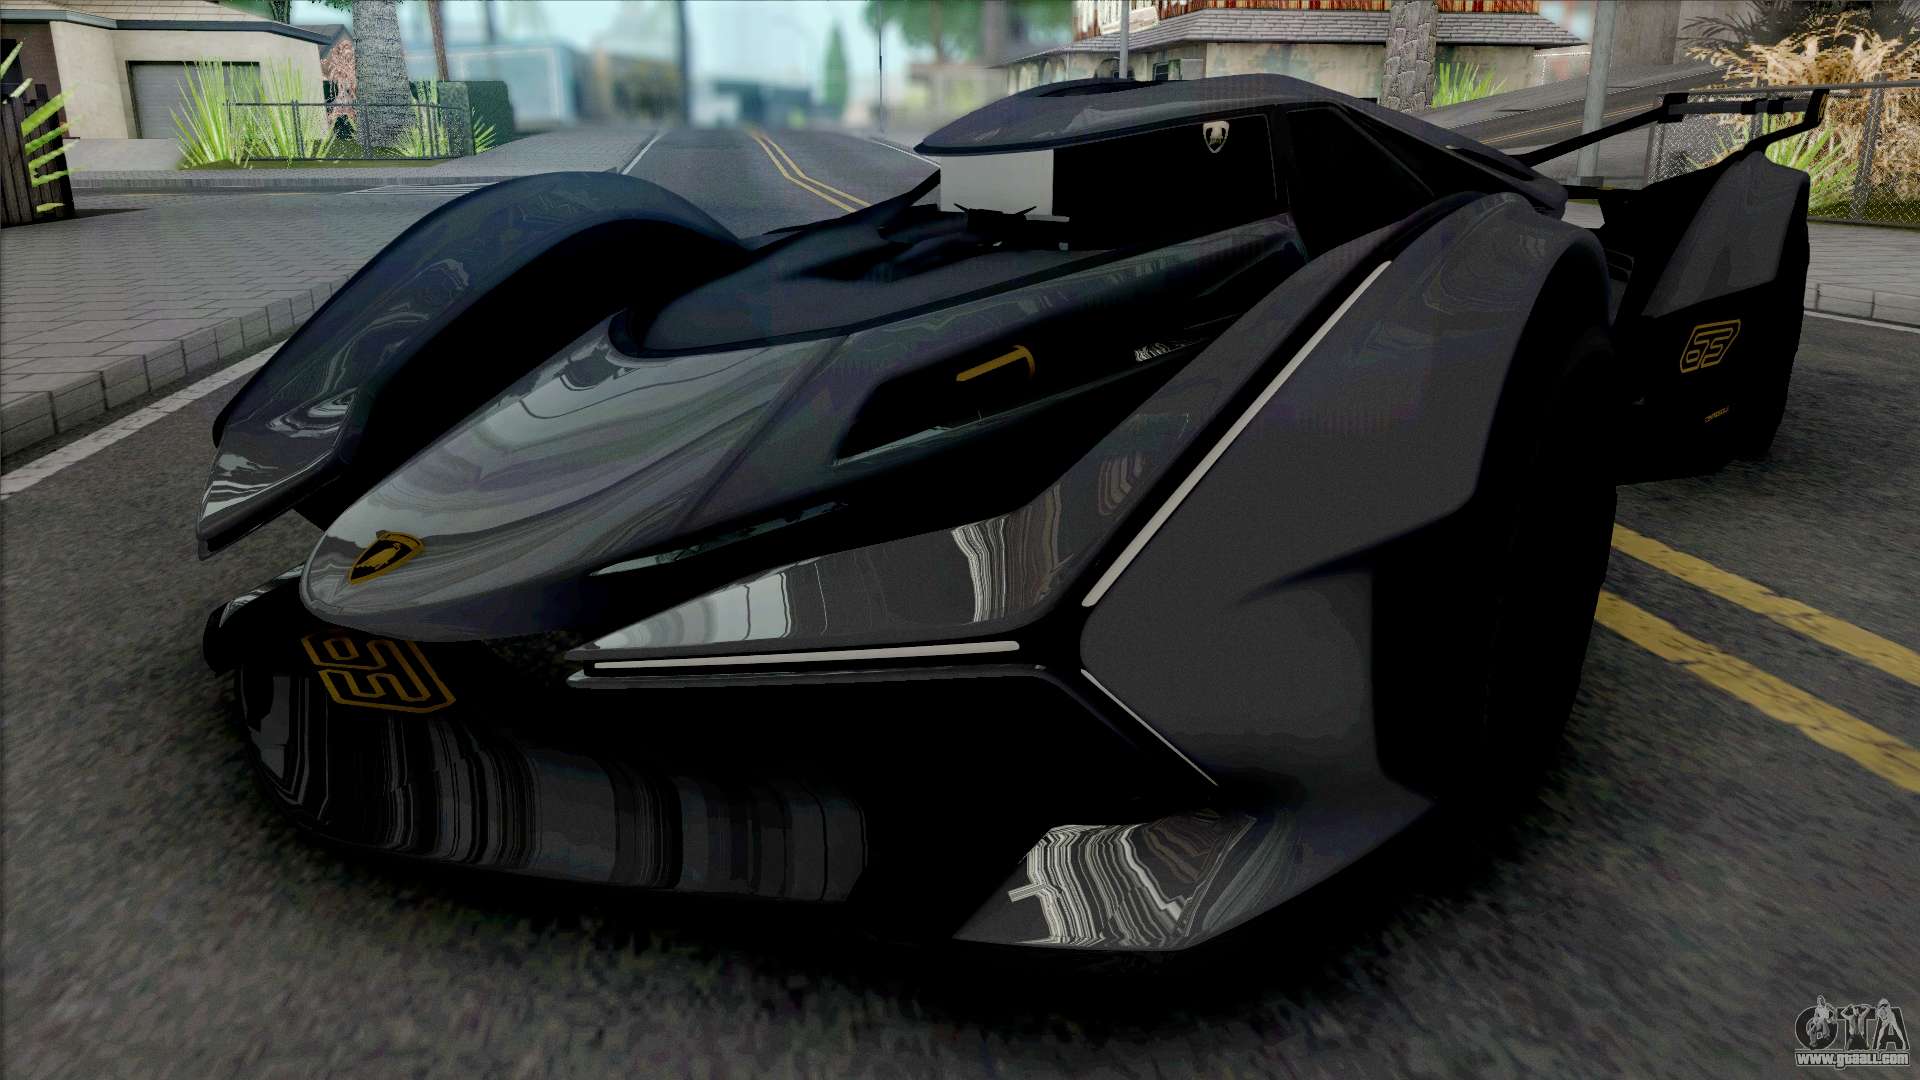 Lamborghini para o GTA San Andreas - Jogos Palpite Digital